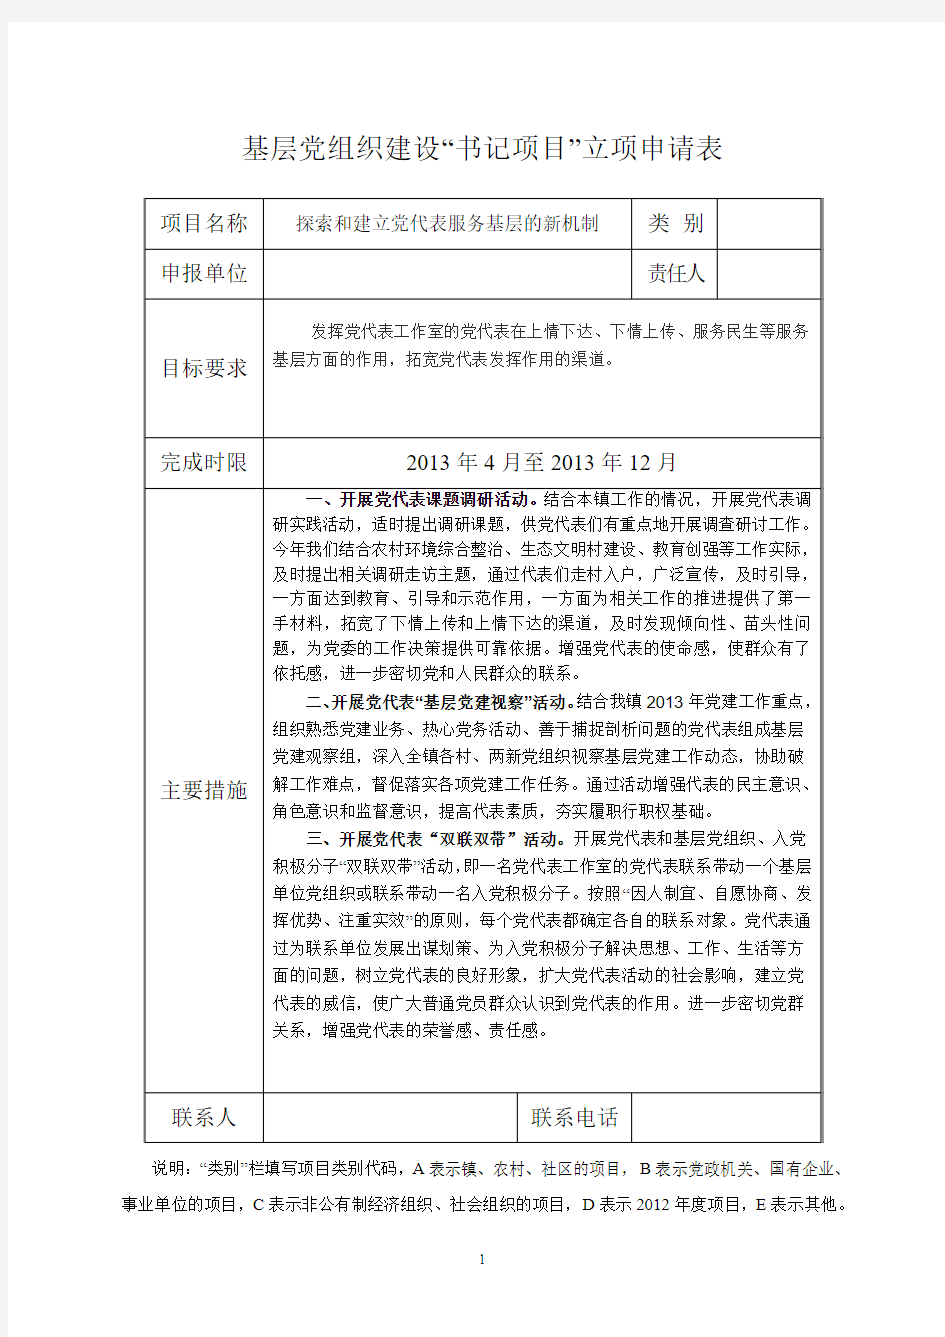 基层党组织建设书记项目立项申请表2013